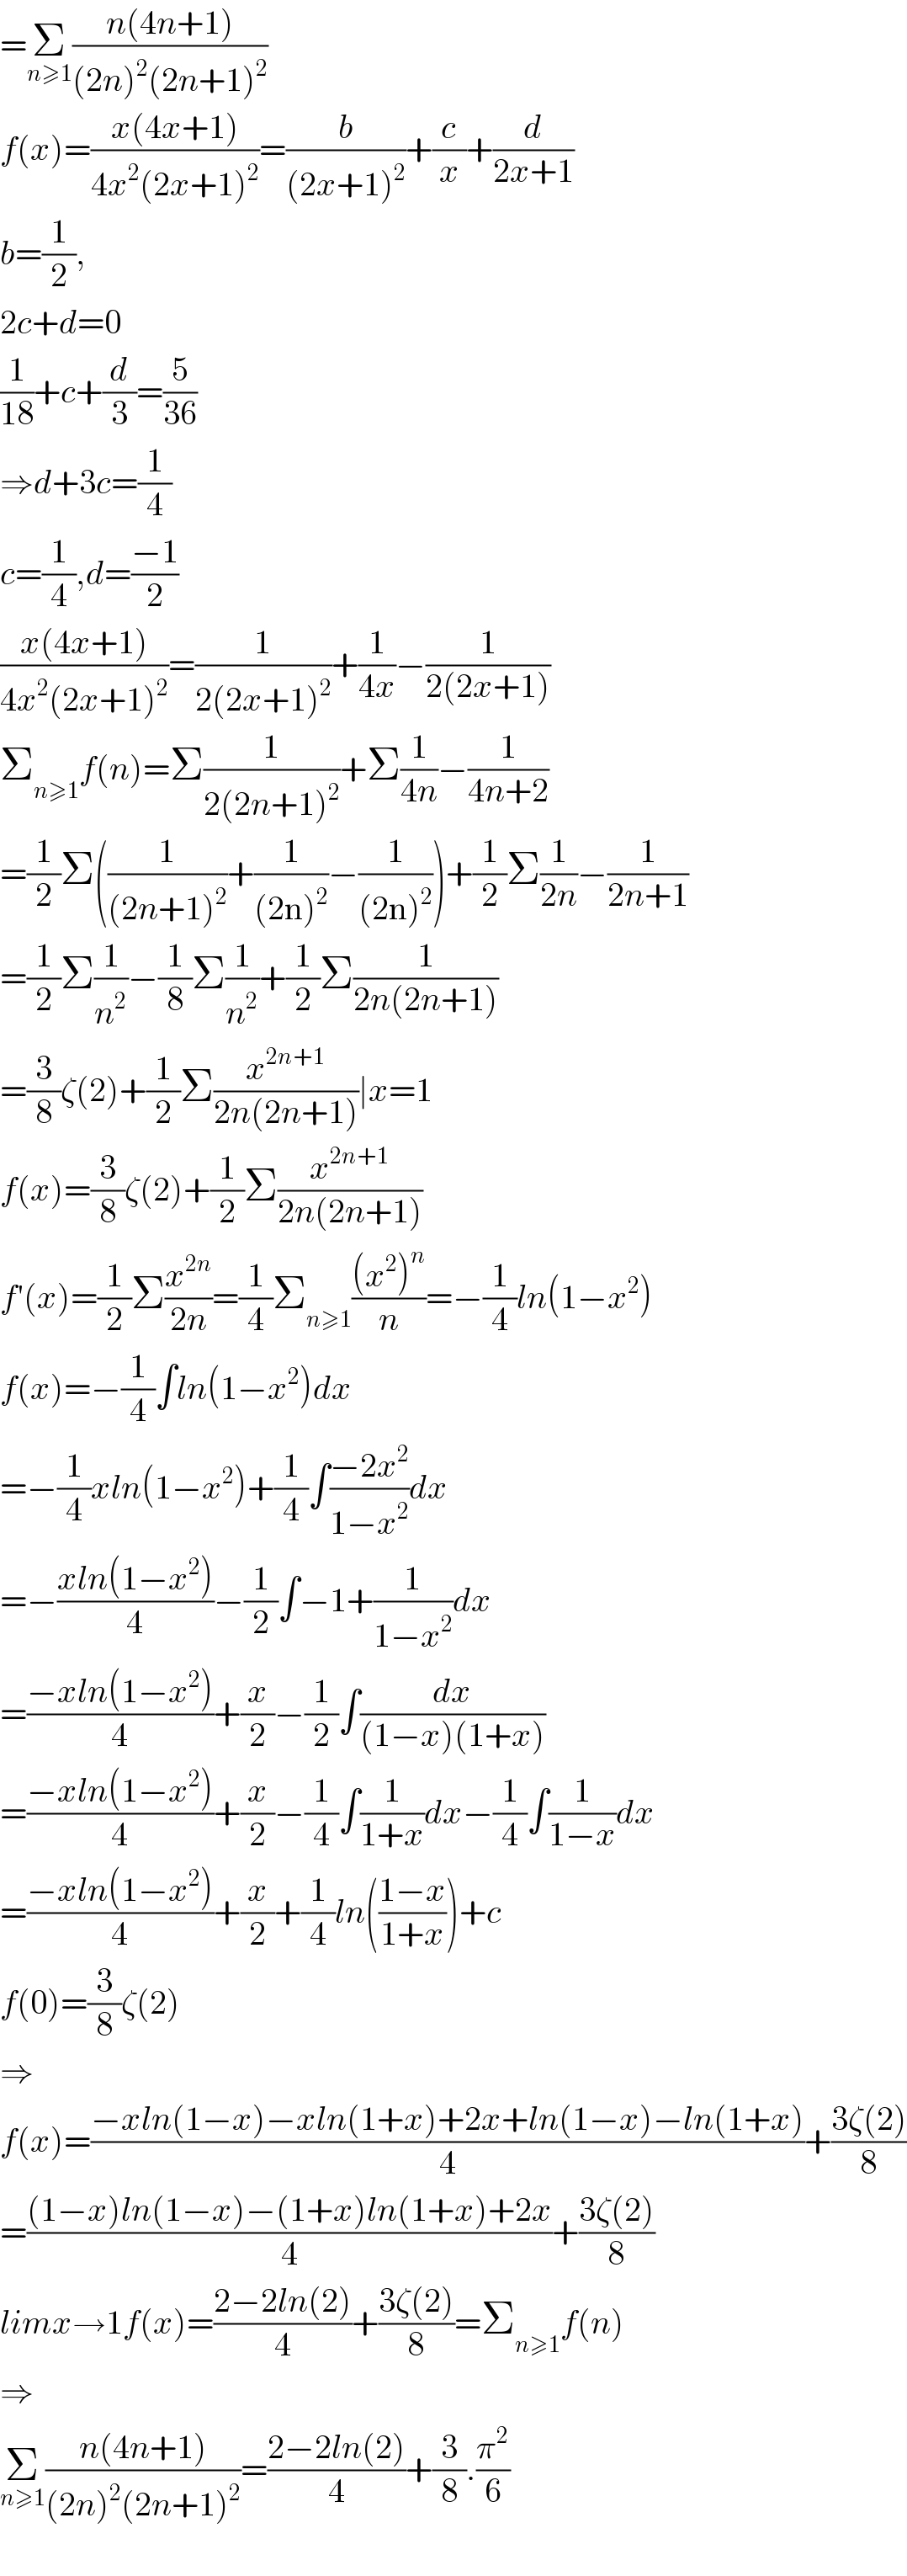 =Σ_(n≥1) ((n(4n+1))/((2n)^2 (2n+1)^2 ))  f(x)=((x(4x+1))/(4x^2 (2x+1)^2 ))=(b/((2x+1)^2 ))+(c/x)+(d/(2x+1))  b=(1/2),  2c+d=0  (1/(18))+c+(d/3)=(5/(36))  ⇒d+3c=(1/4)  c=(1/4),d=((−1)/2)  ((x(4x+1))/(4x^2 (2x+1)^2 ))=(1/(2(2x+1)^2 ))+(1/(4x))−(1/(2(2x+1)))  Σ_(n≥1) f(n)=Σ(1/(2(2n+1)^2 ))+Σ(1/(4n))−(1/(4n+2))  =(1/2)Σ((1/((2n+1)^2 ))+(1/((2n)^2 ))−(1/((2n)^2 )))+(1/2)Σ(1/(2n))−(1/(2n+1))  =(1/2)Σ(1/n^2 )−(1/8)Σ(1/n^2 )+(1/2)Σ(1/(2n(2n+1)))  =(3/8)ζ(2)+(1/2)Σ(x^(2n+1) /(2n(2n+1)))∣x=1  f(x)=(3/8)ζ(2)+(1/2)Σ(x^(2n+1) /(2n(2n+1)))  f′(x)=(1/2)Σ(x^(2n) /(2n))=(1/4)Σ_(n≥1) (((x^2 )^n )/n)=−(1/4)ln(1−x^2 )  f(x)=−(1/4)∫ln(1−x^2 )dx  =−(1/4)xln(1−x^2 )+(1/4)∫((−2x^2 )/(1−x^2 ))dx  =−((xln(1−x^2 ))/4)−(1/2)∫−1+(1/(1−x^2 ))dx  =((−xln(1−x^2 ))/4)+(x/2)−(1/2)∫(dx/((1−x)(1+x)))  =((−xln(1−x^2 ))/4)+(x/2)−(1/4)∫(1/(1+x))dx−(1/4)∫(1/(1−x))dx  =((−xln(1−x^2 ))/4)+(x/2)+(1/4)ln(((1−x)/(1+x)))+c  f(0)=(3/8)ζ(2)  ⇒  f(x)=((−xln(1−x)−xln(1+x)+2x+ln(1−x)−ln(1+x))/4)+((3ζ(2))/8)  =(((1−x)ln(1−x)−(1+x)ln(1+x)+2x)/4)+((3ζ(2))/8)  limx→1f(x)=((2−2ln(2))/4)+((3ζ(2))/8)=Σ_(n≥1) f(n)  ⇒  Σ_(n≥1) ((n(4n+1))/((2n)^2 (2n+1)^2 ))=((2−2ln(2))/4)+(3/8).(π^2 /6)    